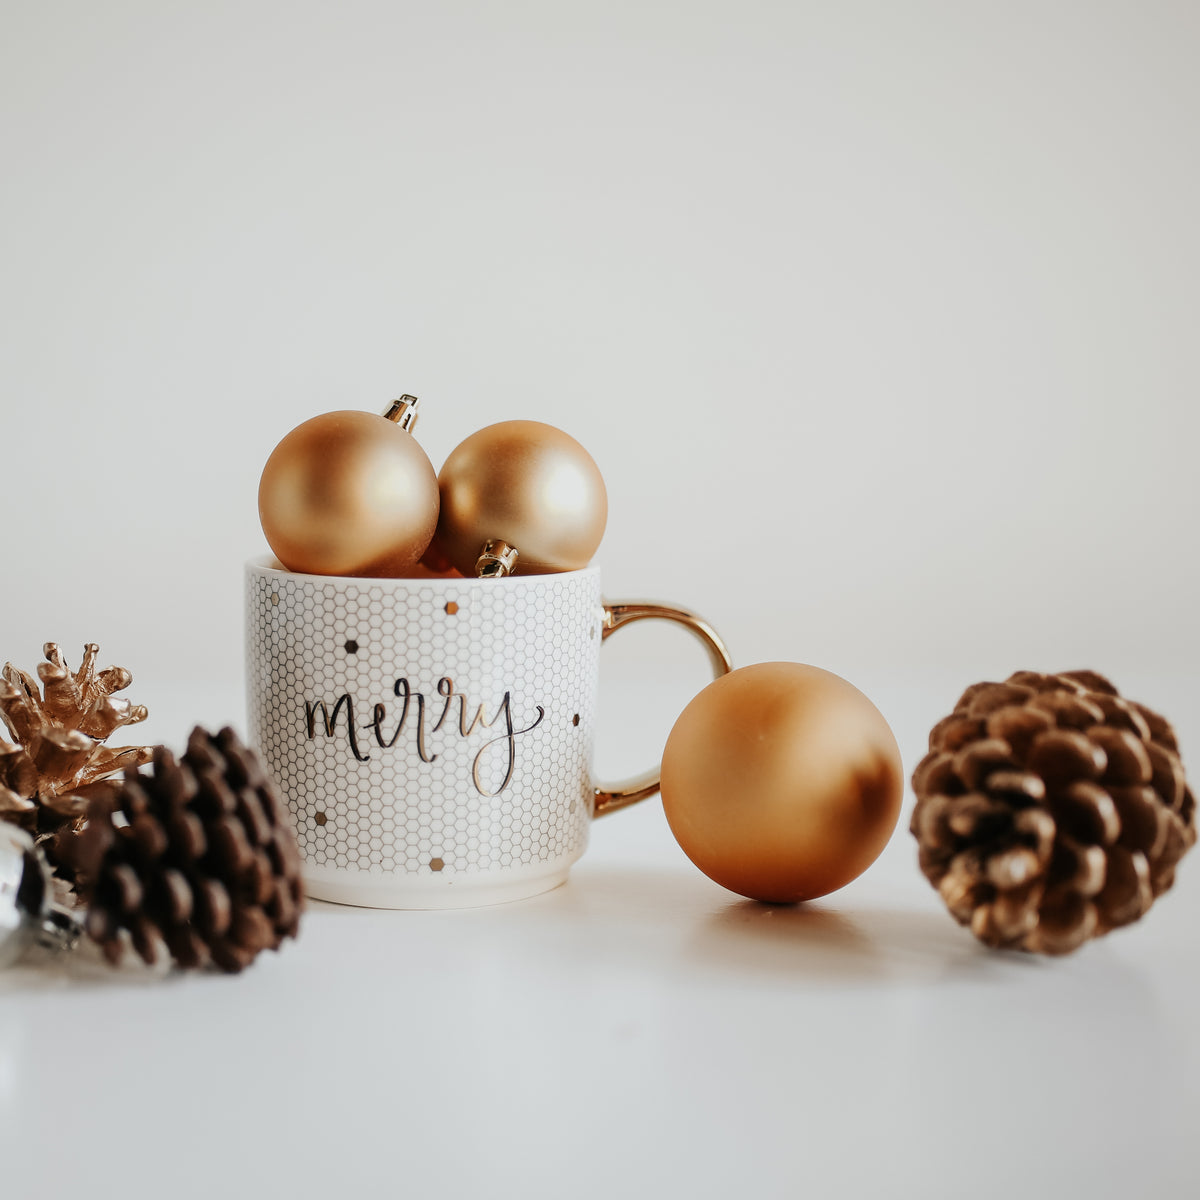 Merry Gold Tile Coffee Mug - 17 oz